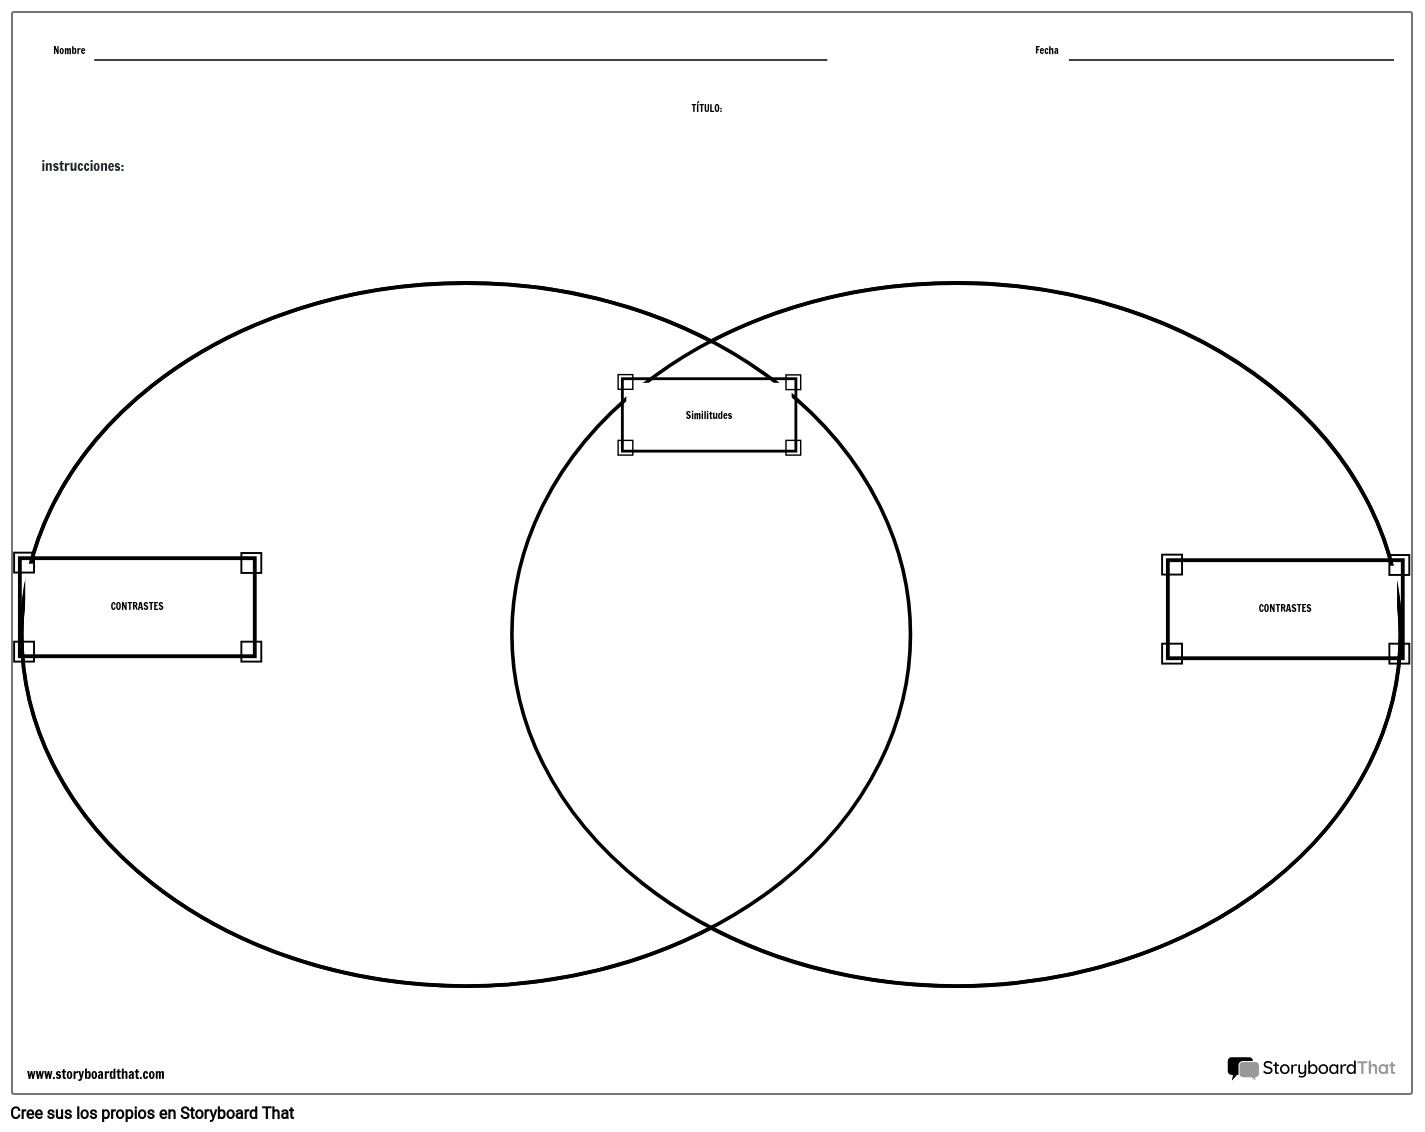 Comparar El Diagrama De Venn De Contraste Storyboard 5674